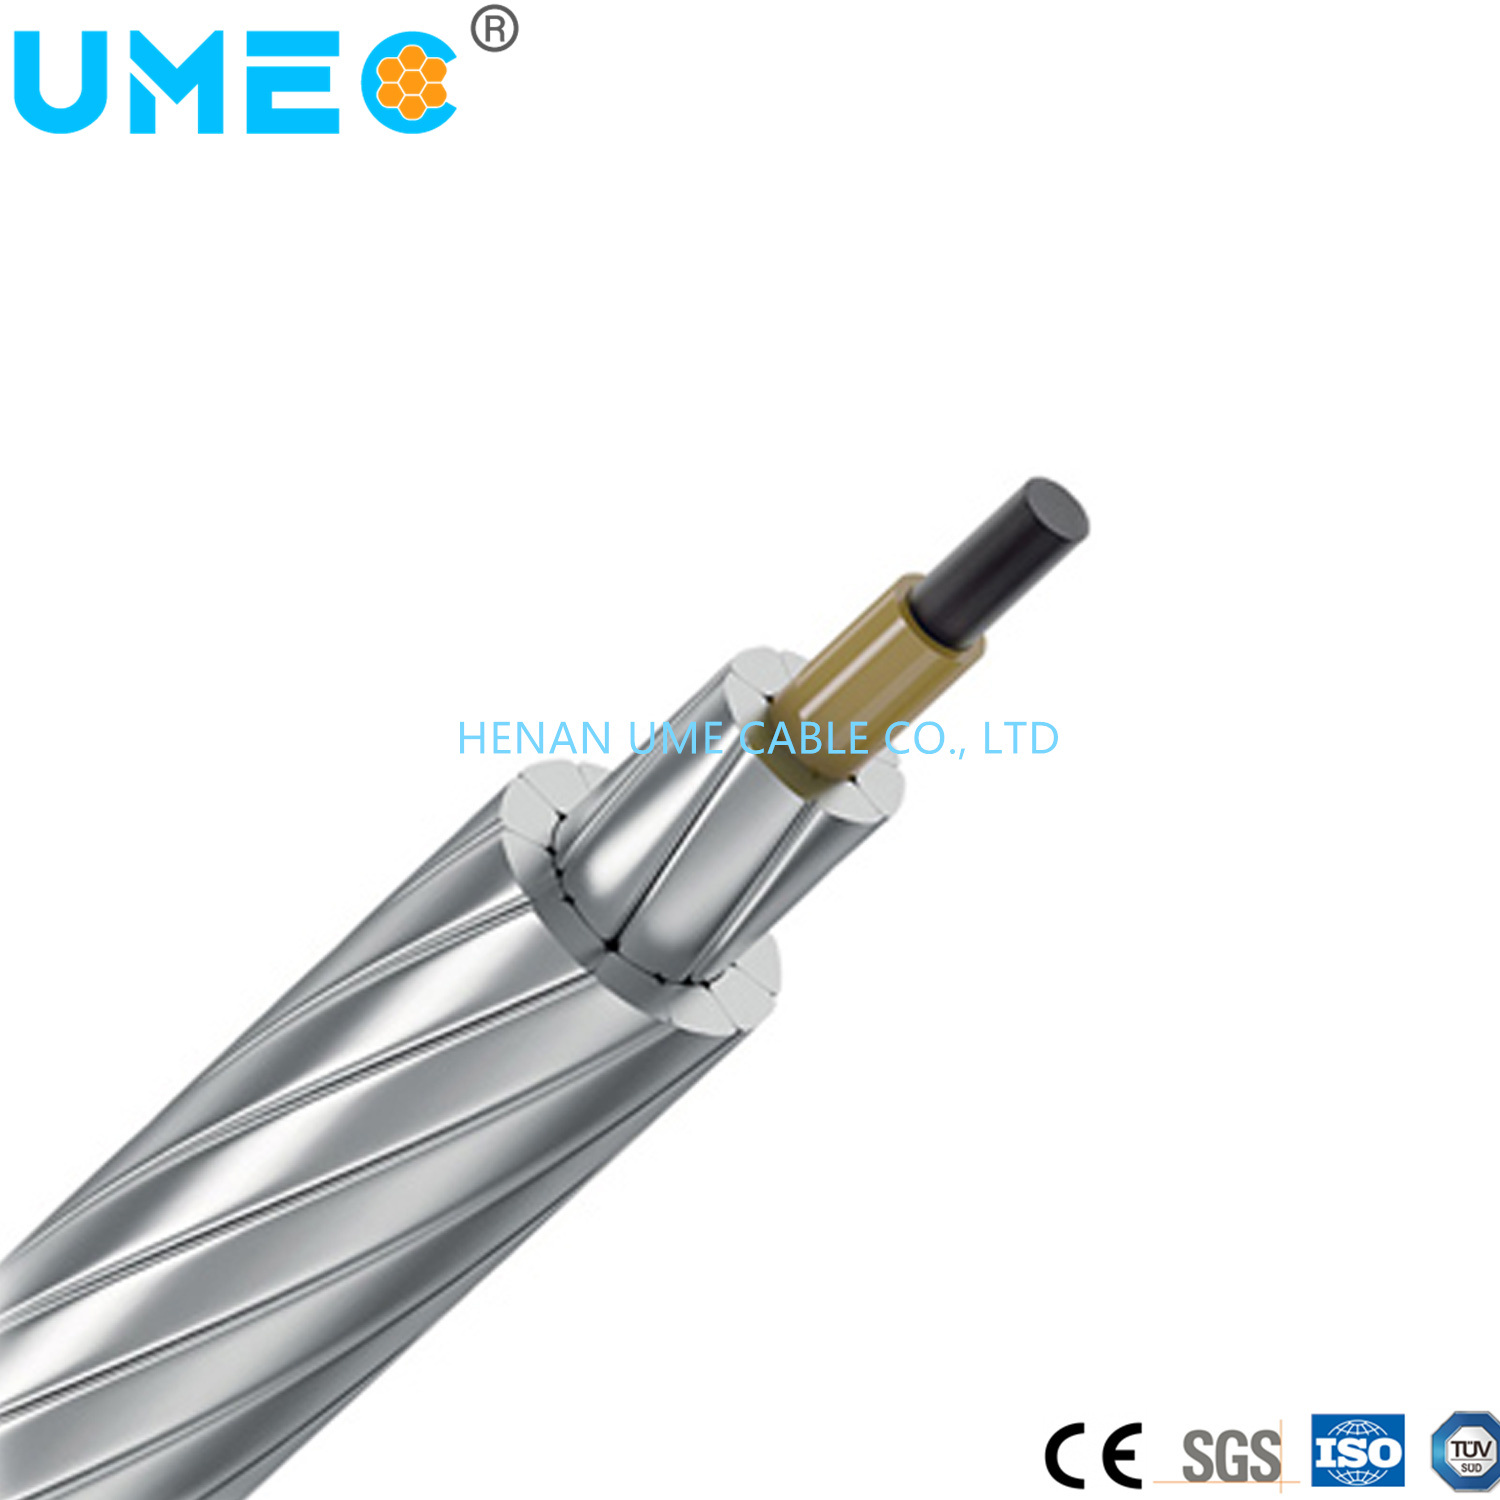 
                Accc Aluminium Conductor Composite Core Aluminium Conductor Carbon Fiber Composite Kabel
            